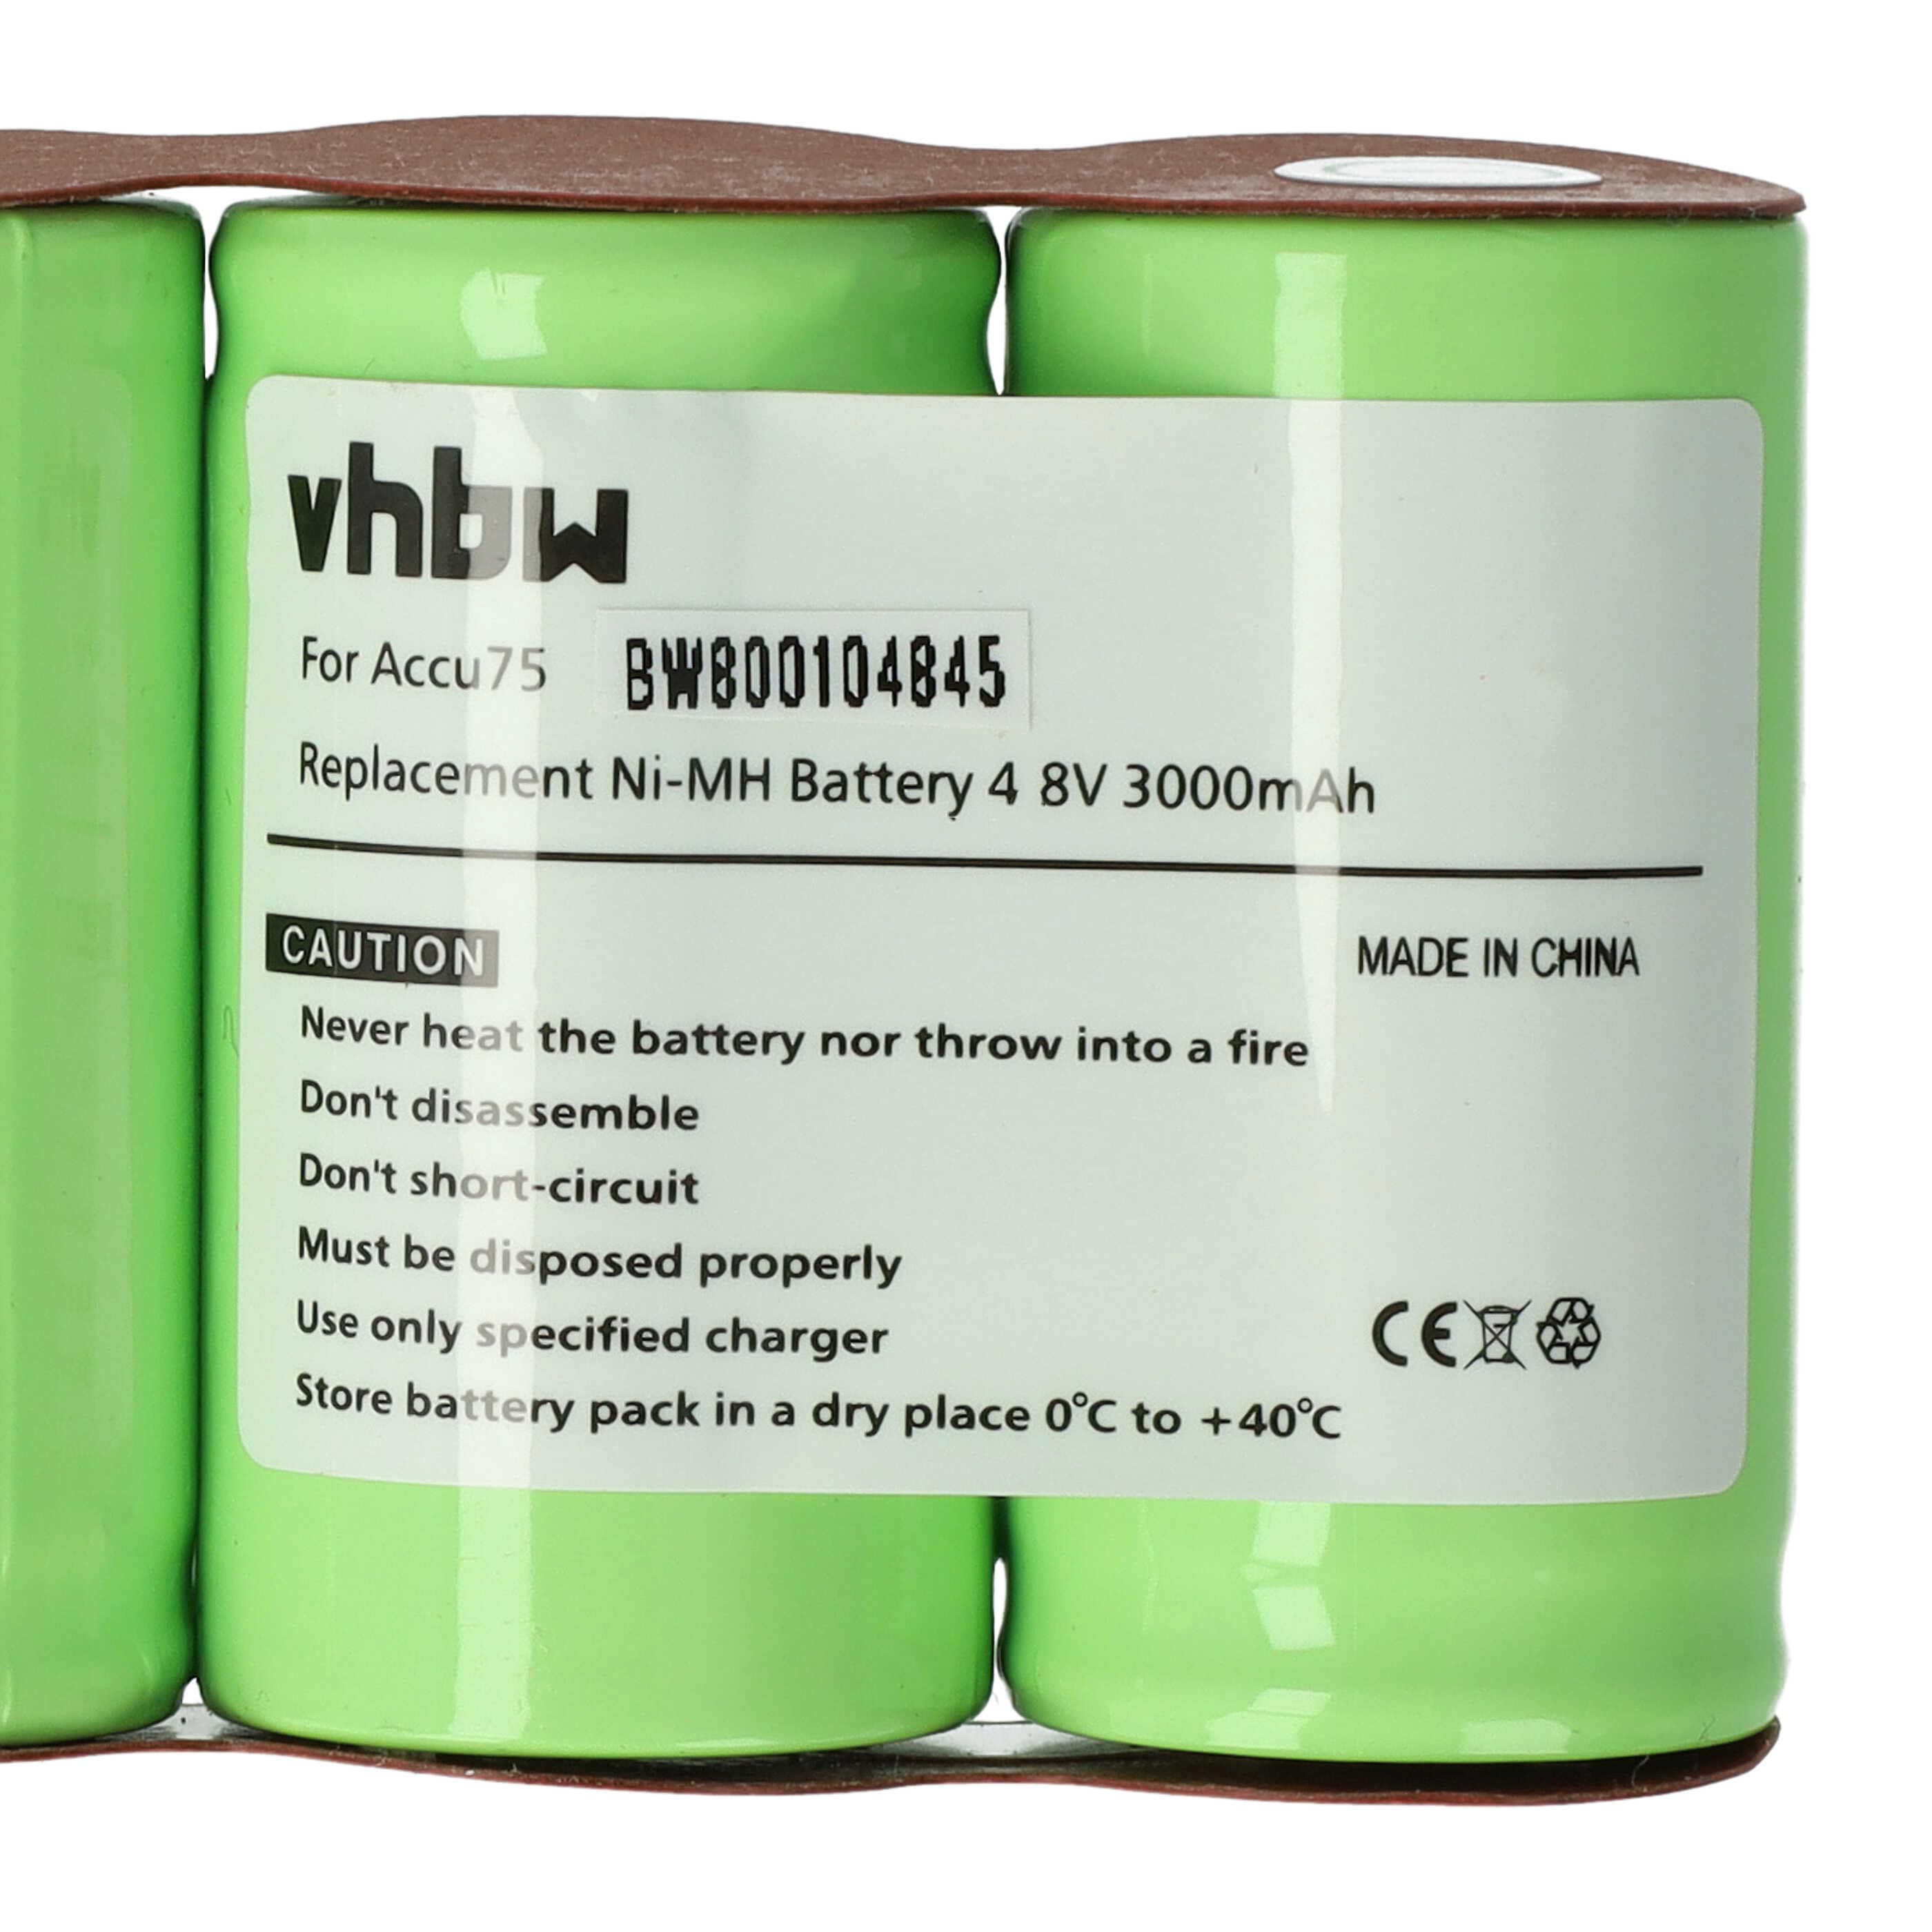 Batterie remplace Accu75 pour outil de jardinage - 3000mAh 4,8V NiMH